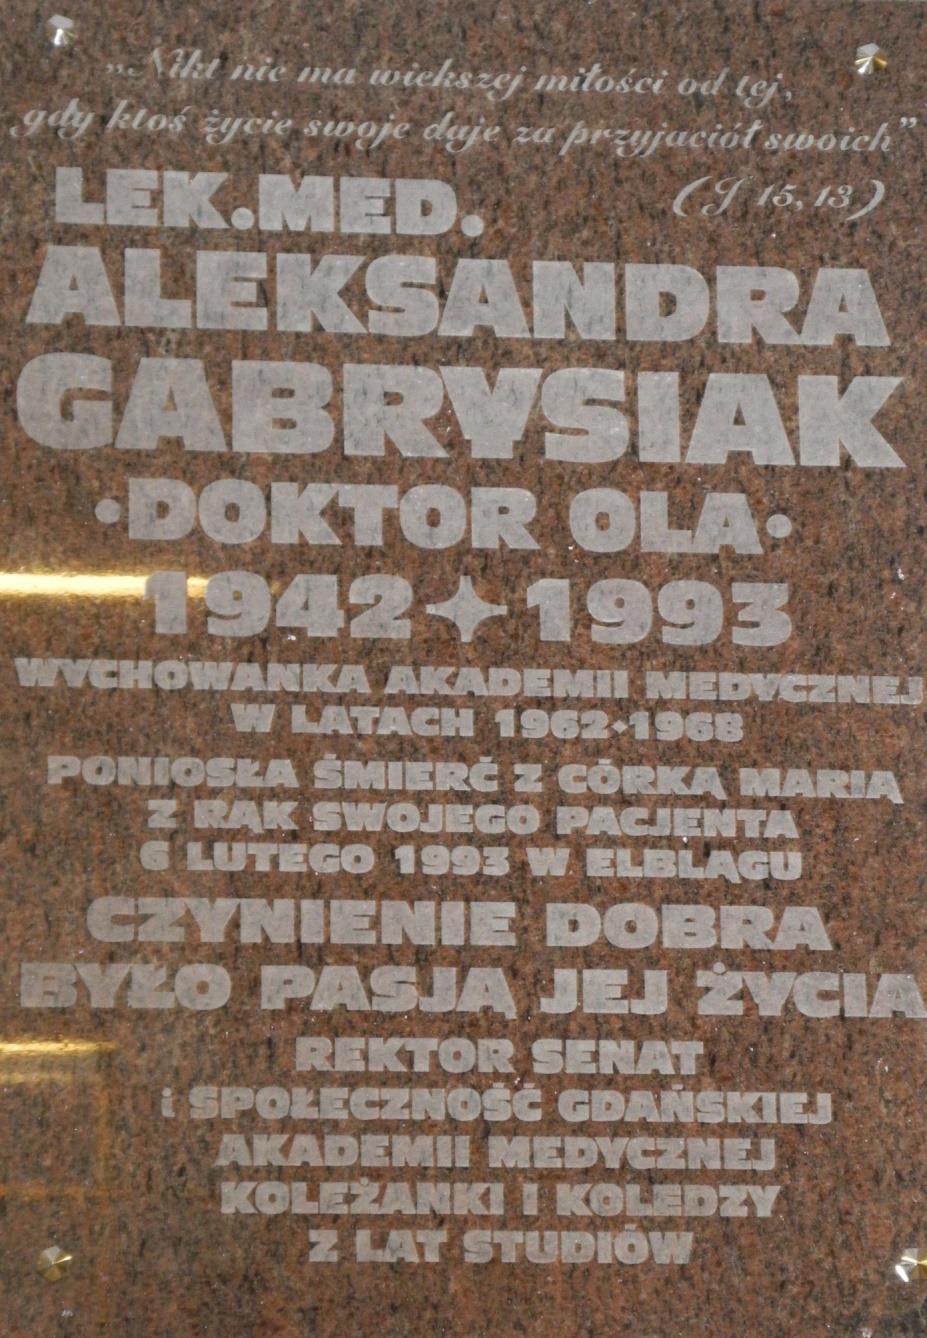 Śmierć dr Oli Aleksandry Gabrysiak wstrząsnęła społecznością Uczelni i Elblągiem, gdzie mieszkała i pracowała.